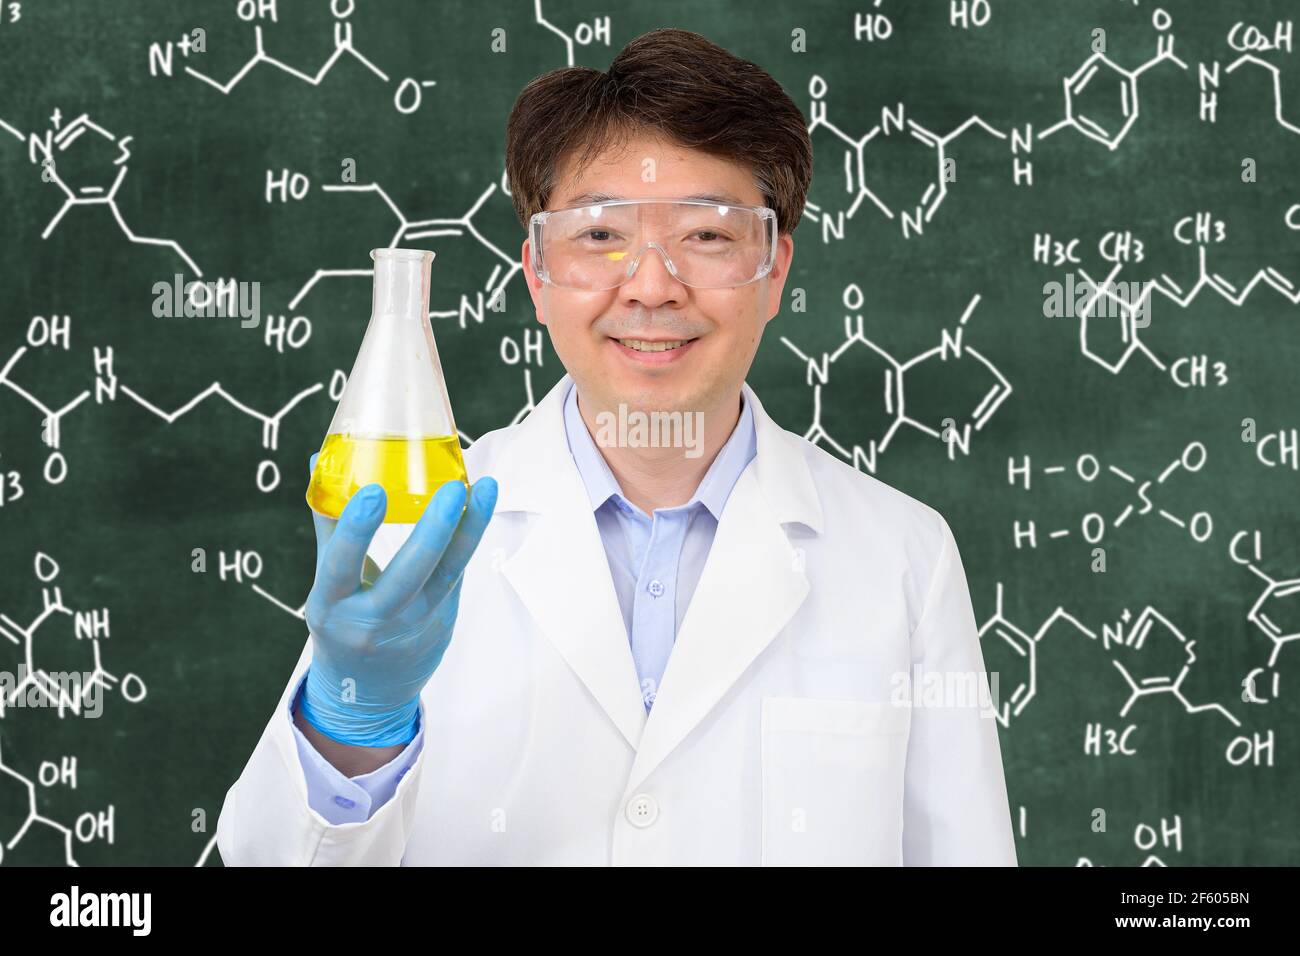 Un scientifique asiatique de milieu d'année portant des gants et tenant un conteneur expérimental devant un tableau noir avec une formule écrite dessus. Banque D'Images